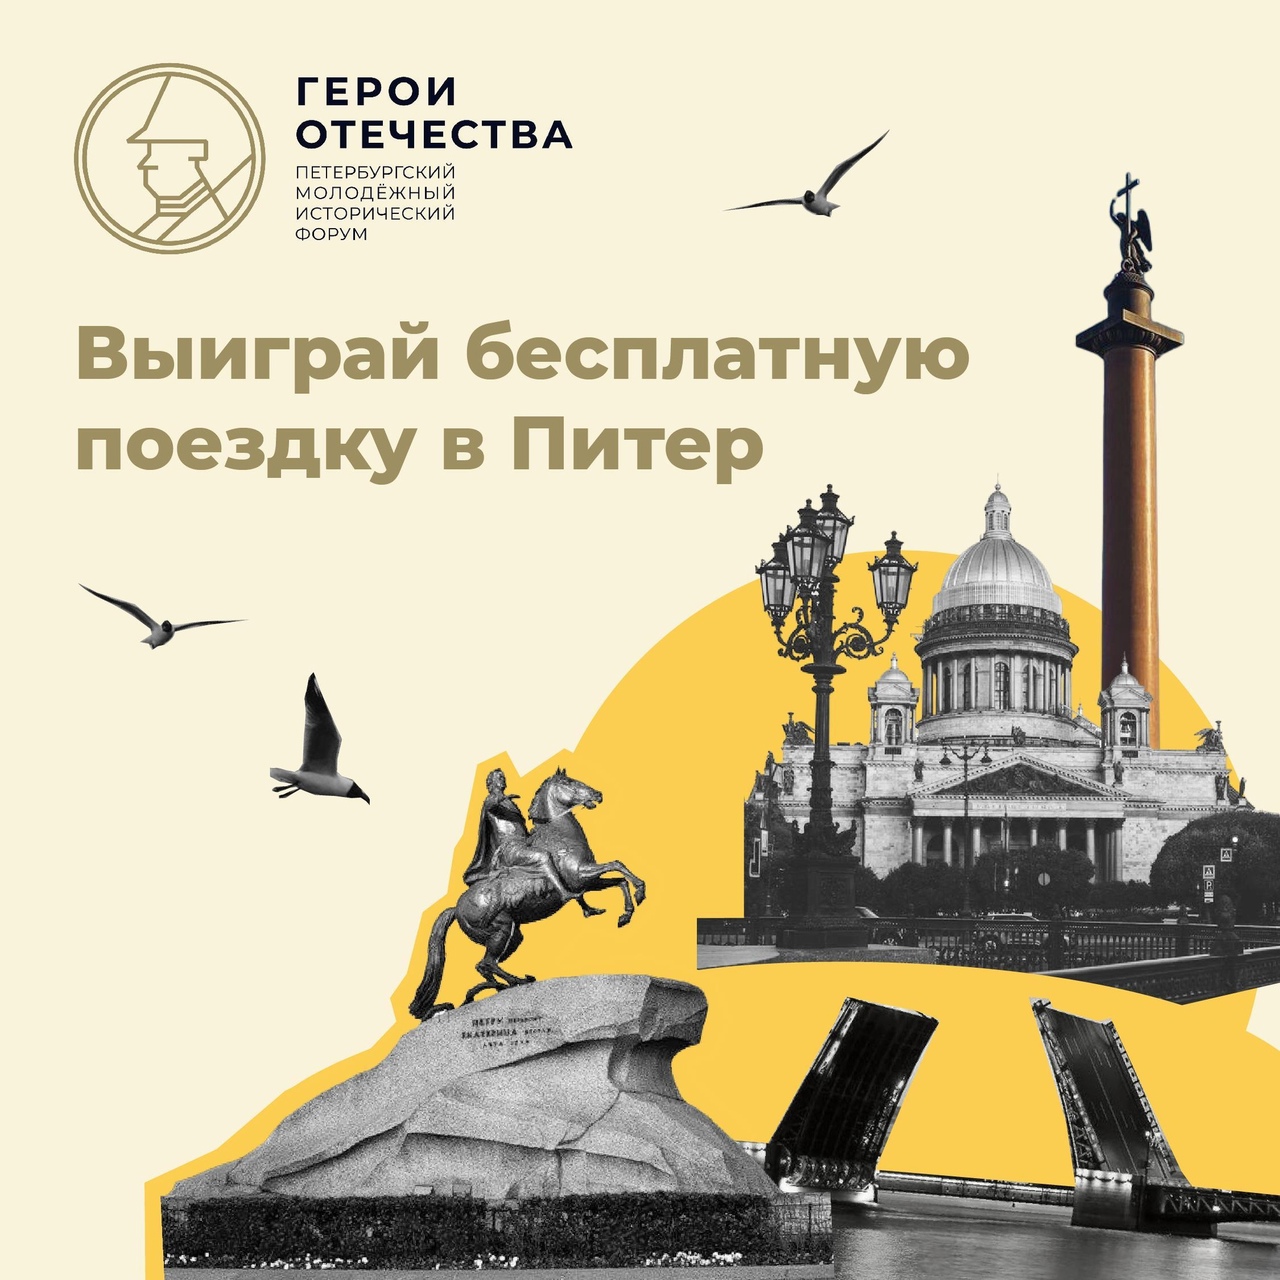 Школьники могут выиграть бесплатную поездку в Санкт-Петербург.